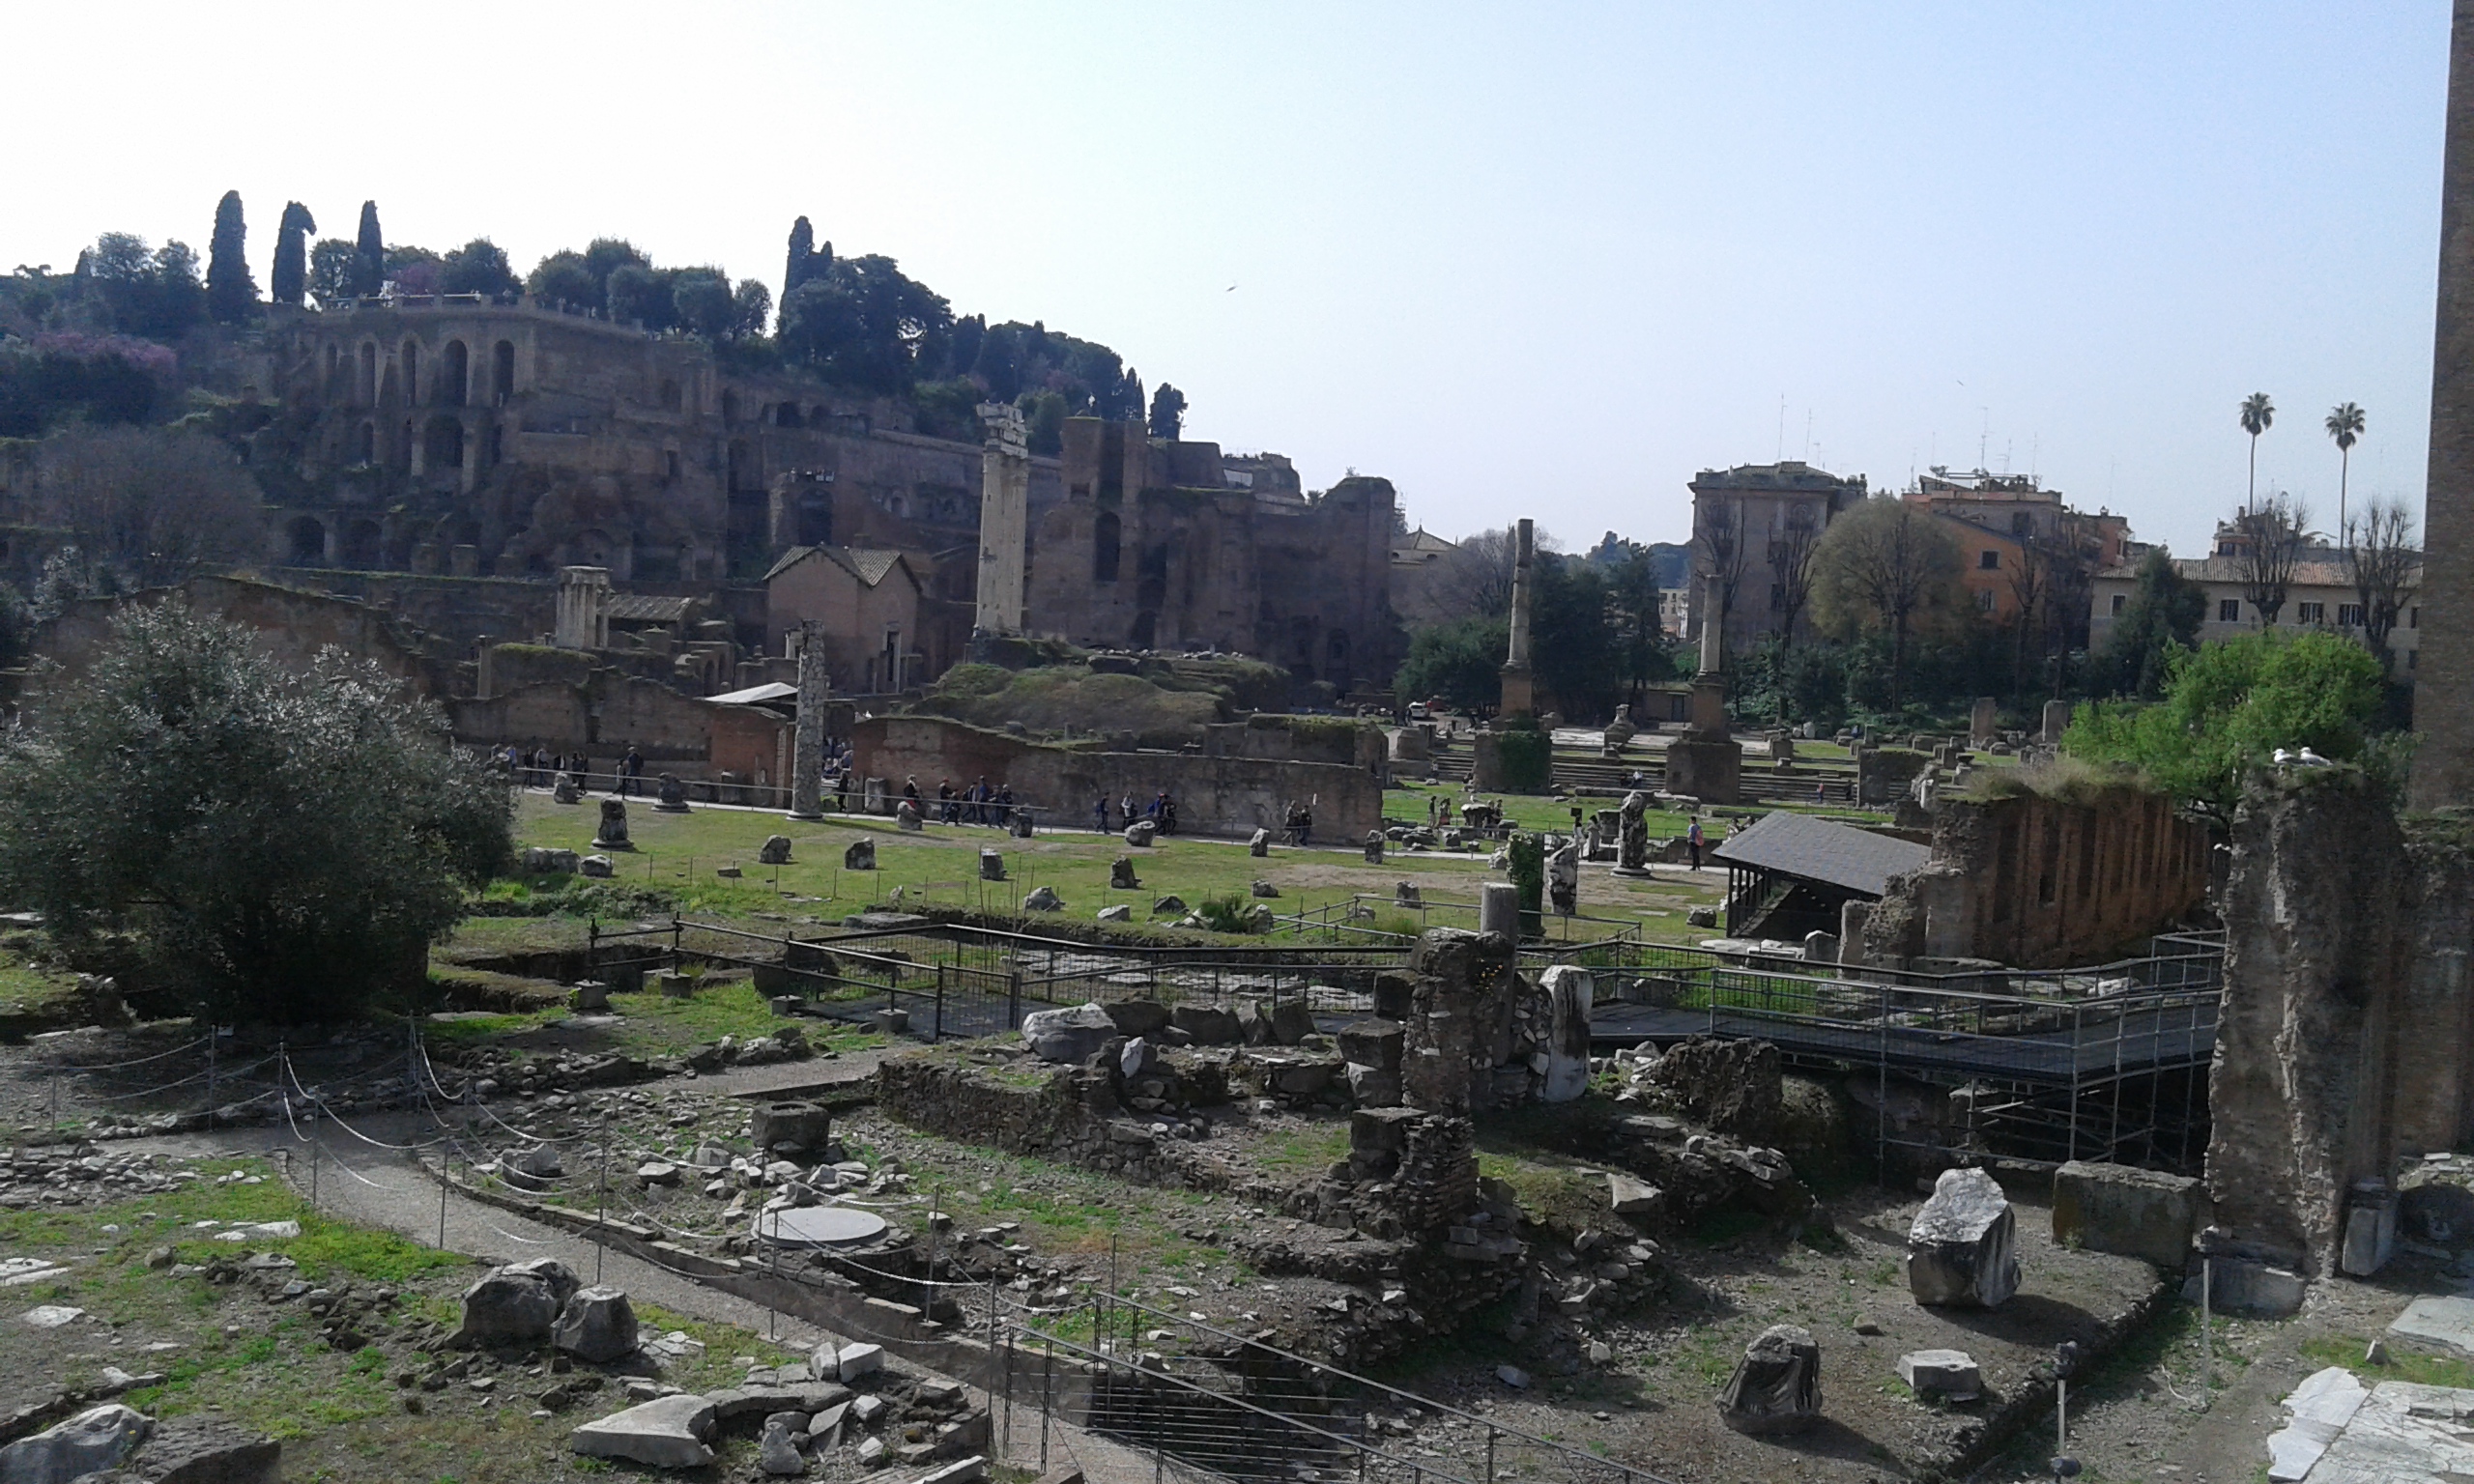 Parco archeologico del Colosseo